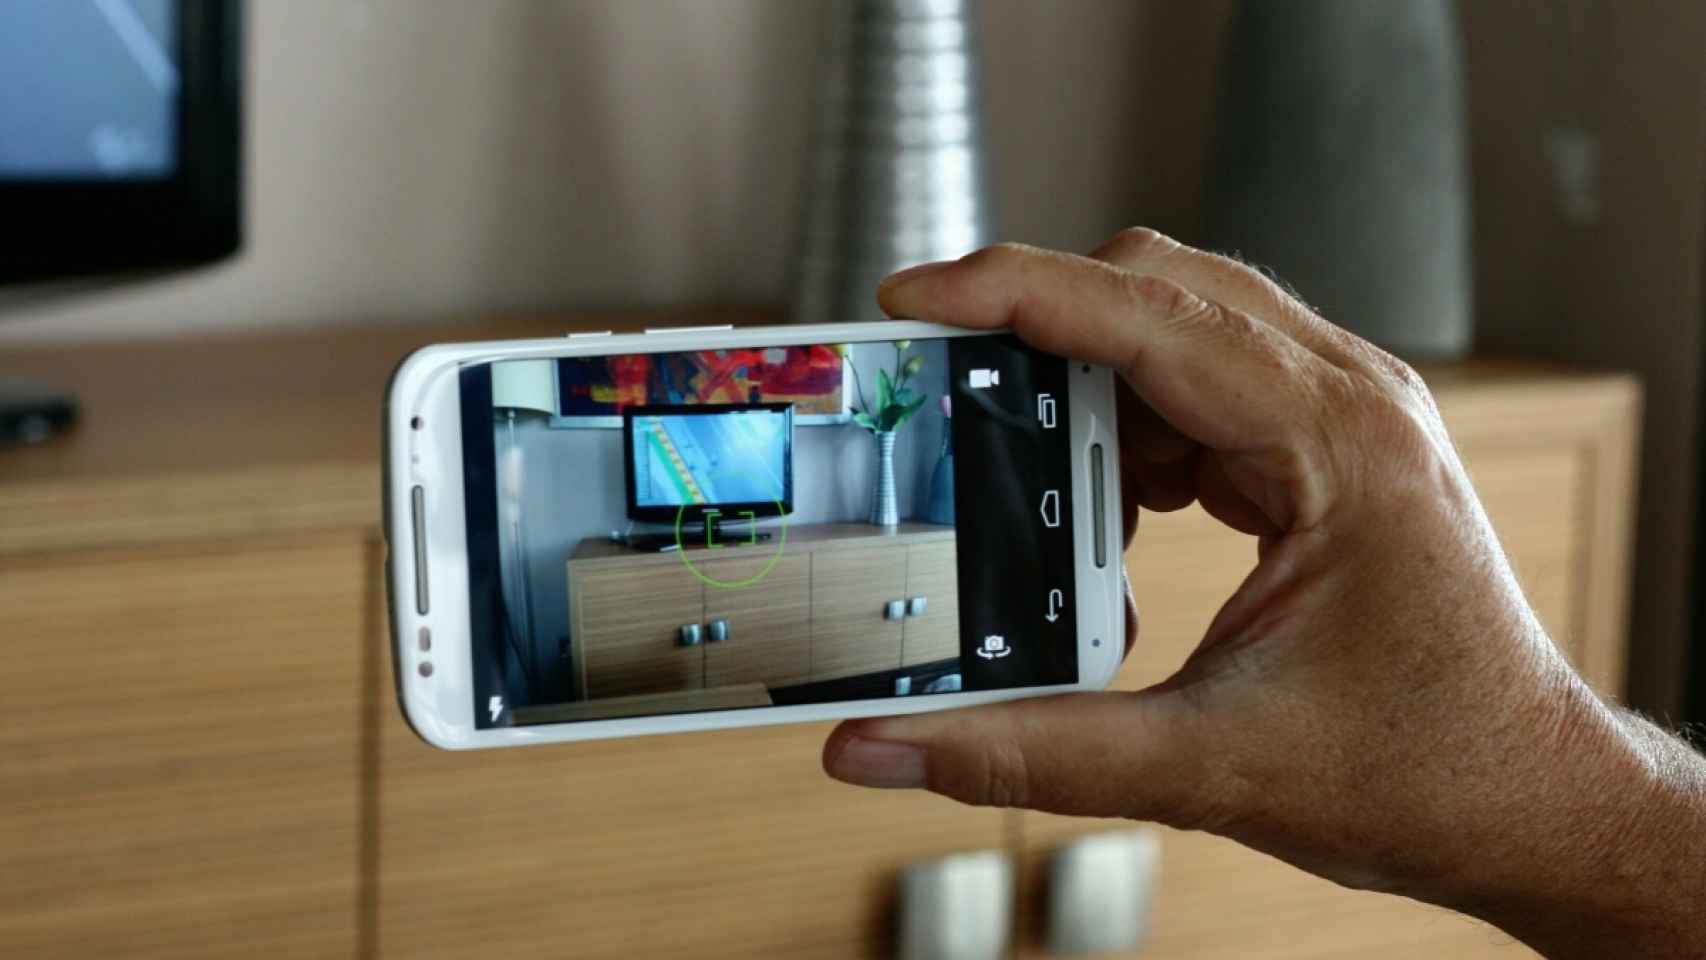 Cámara Moto, la nueva aplicación de Motorola que no puedes probar